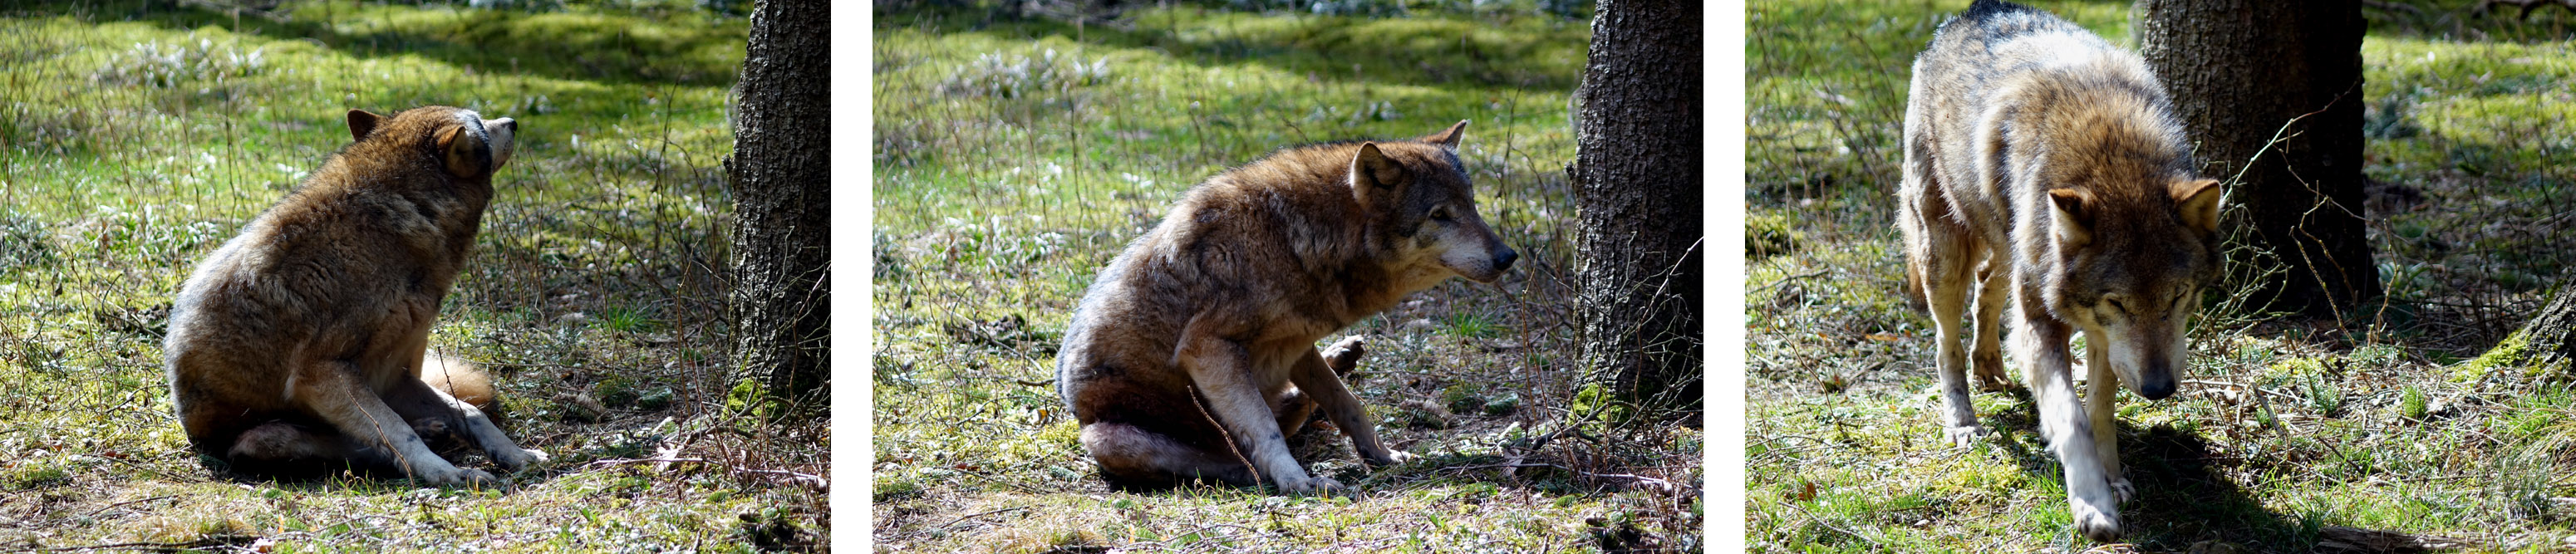 wolf wölfe wildpark hundshaupten fränkische schweiz bayern